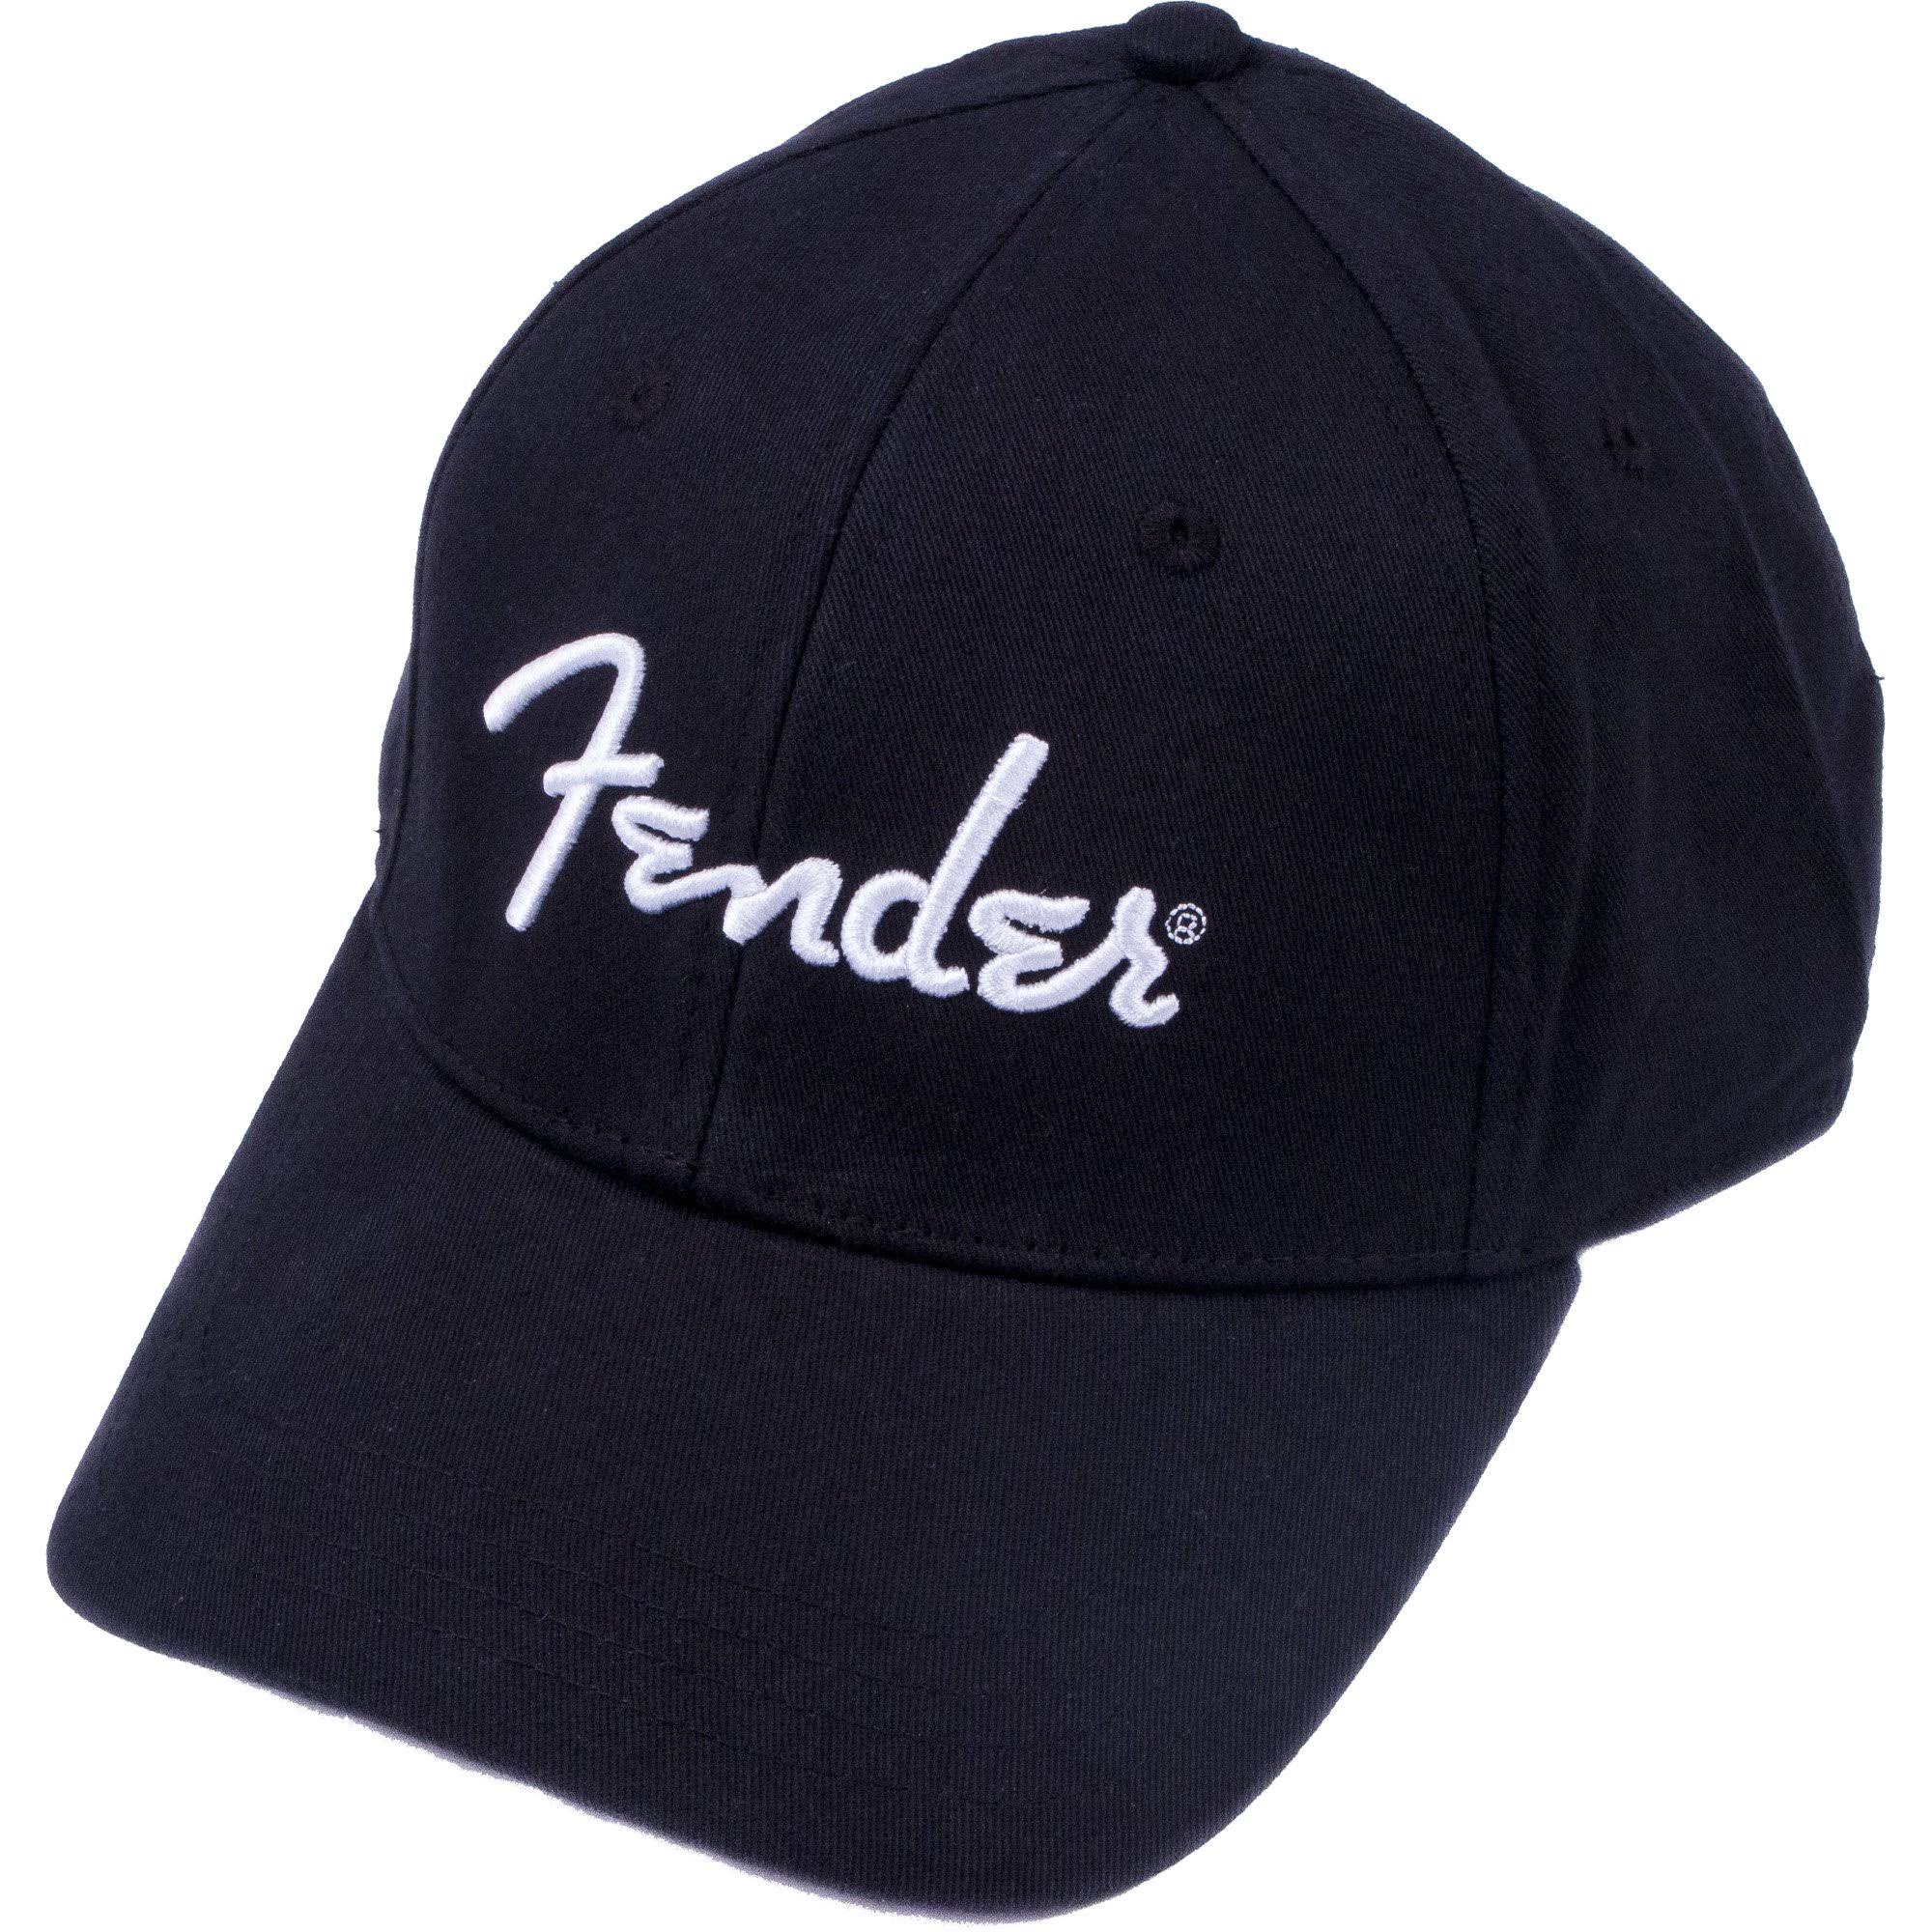 Fender Silver Thread Logo Snapback Trucker Hat - Black